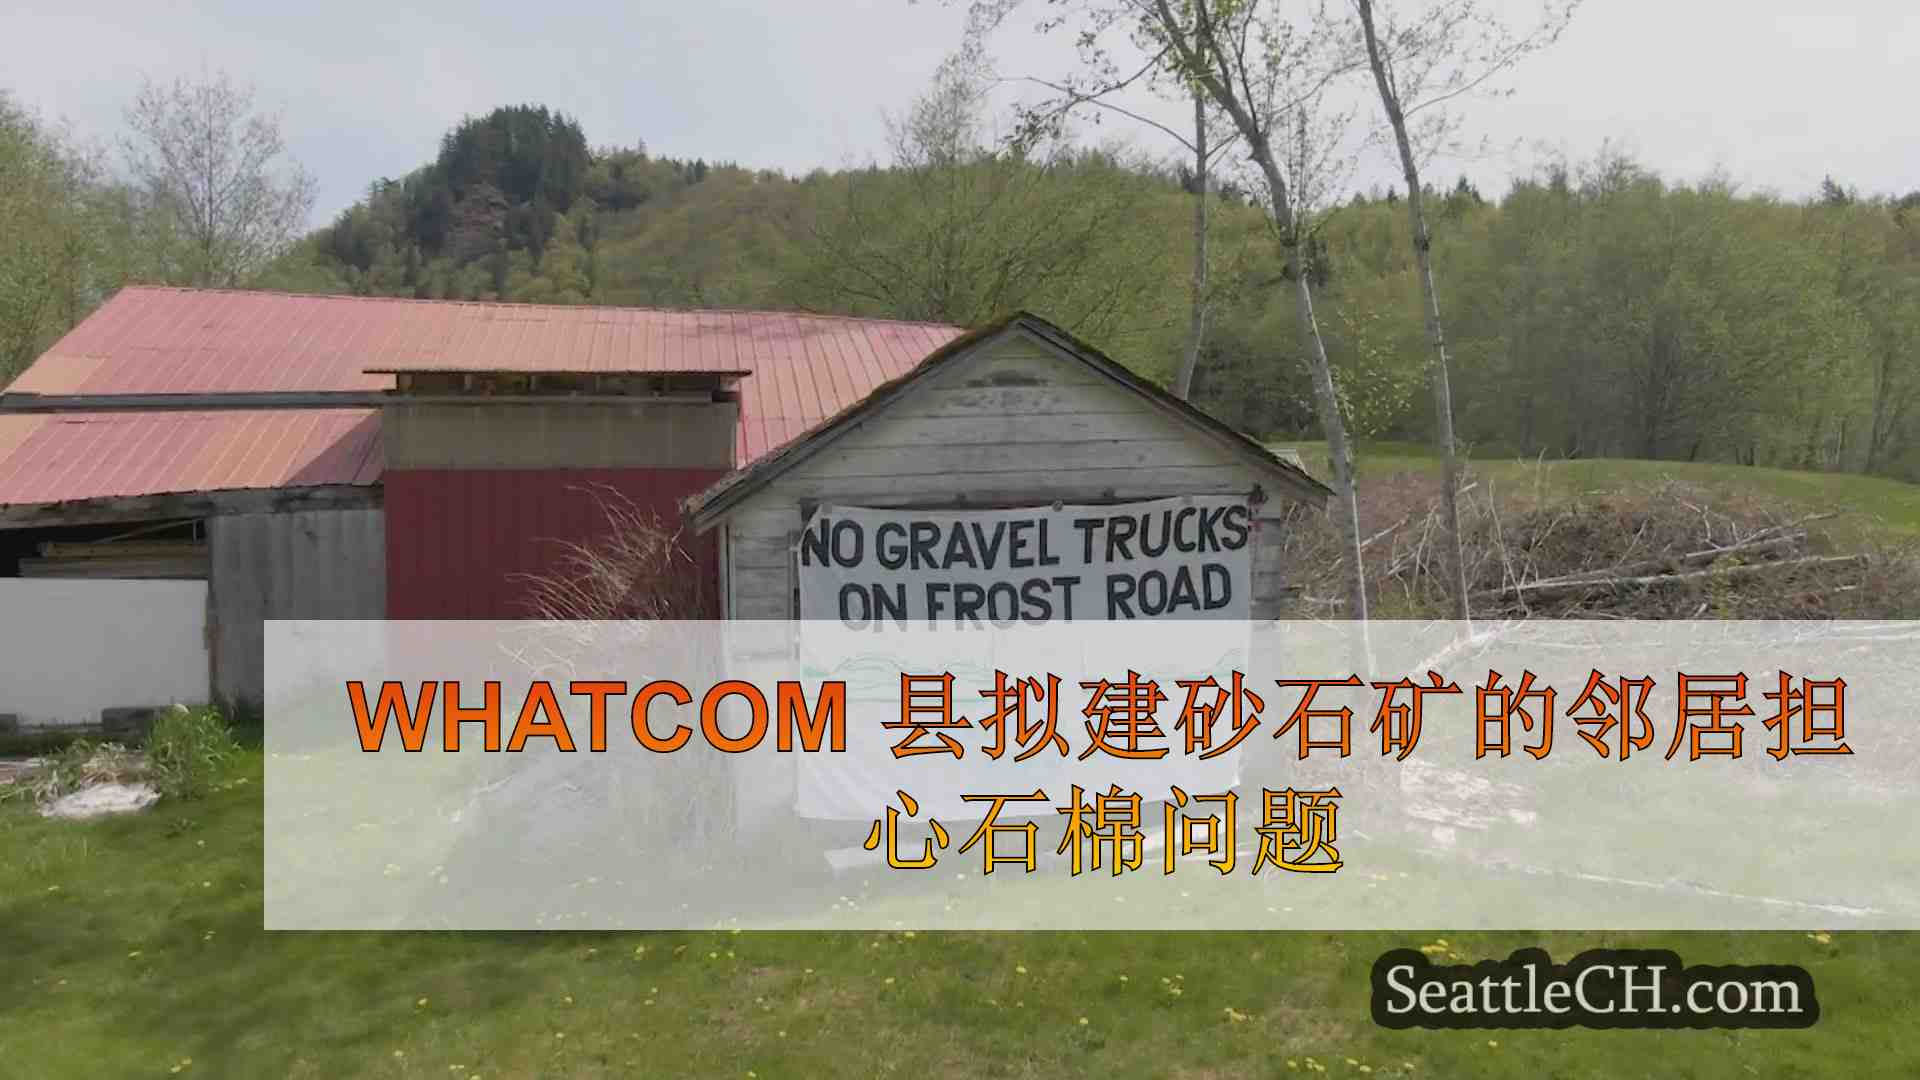 Whatcom 县拟建砂石矿的邻居担心石棉问题